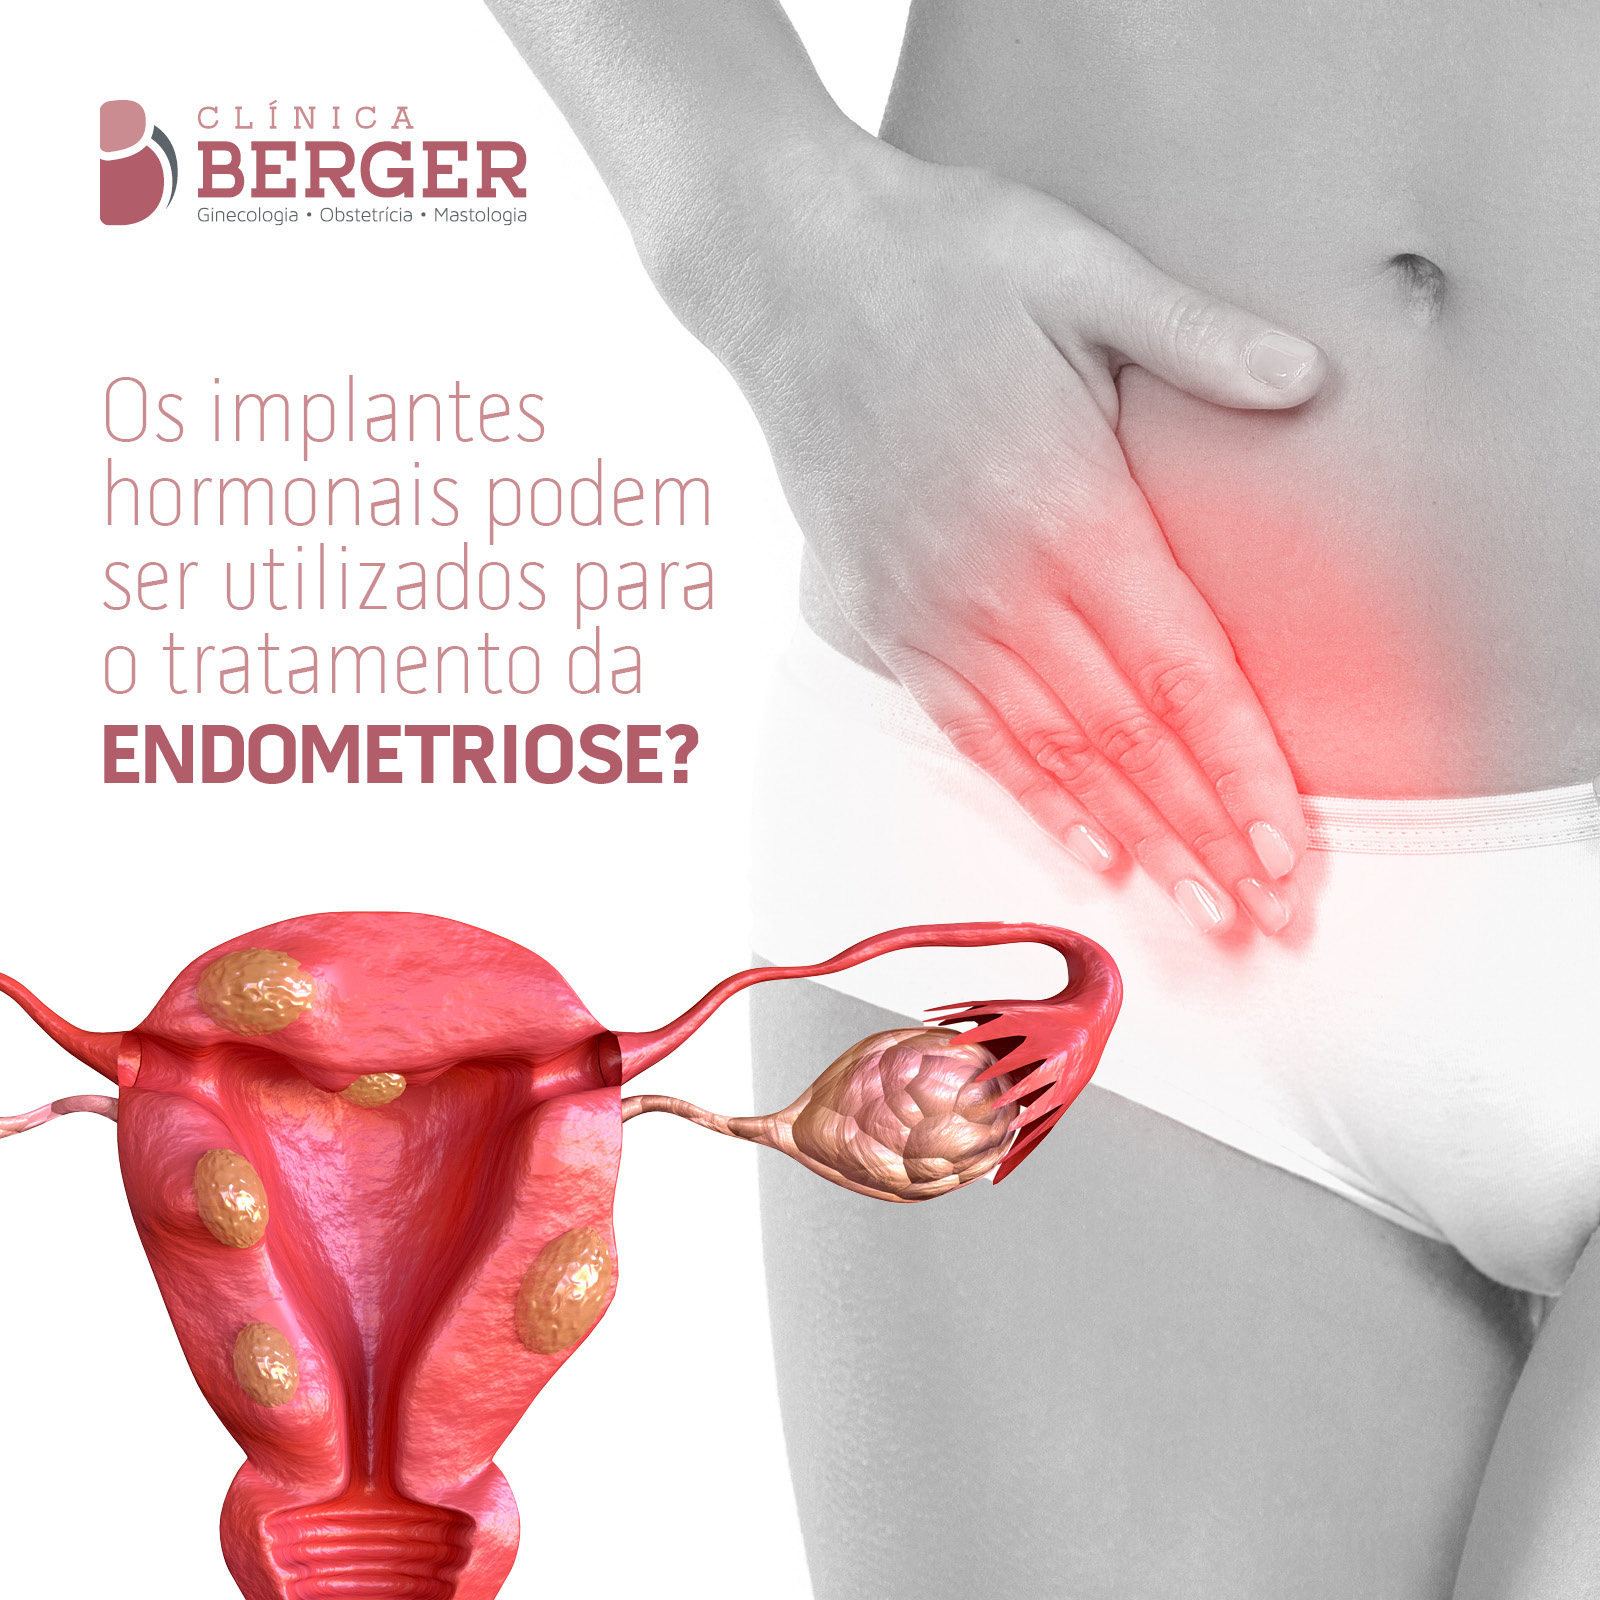 Os implantes hormonais podem ser utilizados para o tratamento da endometriose?